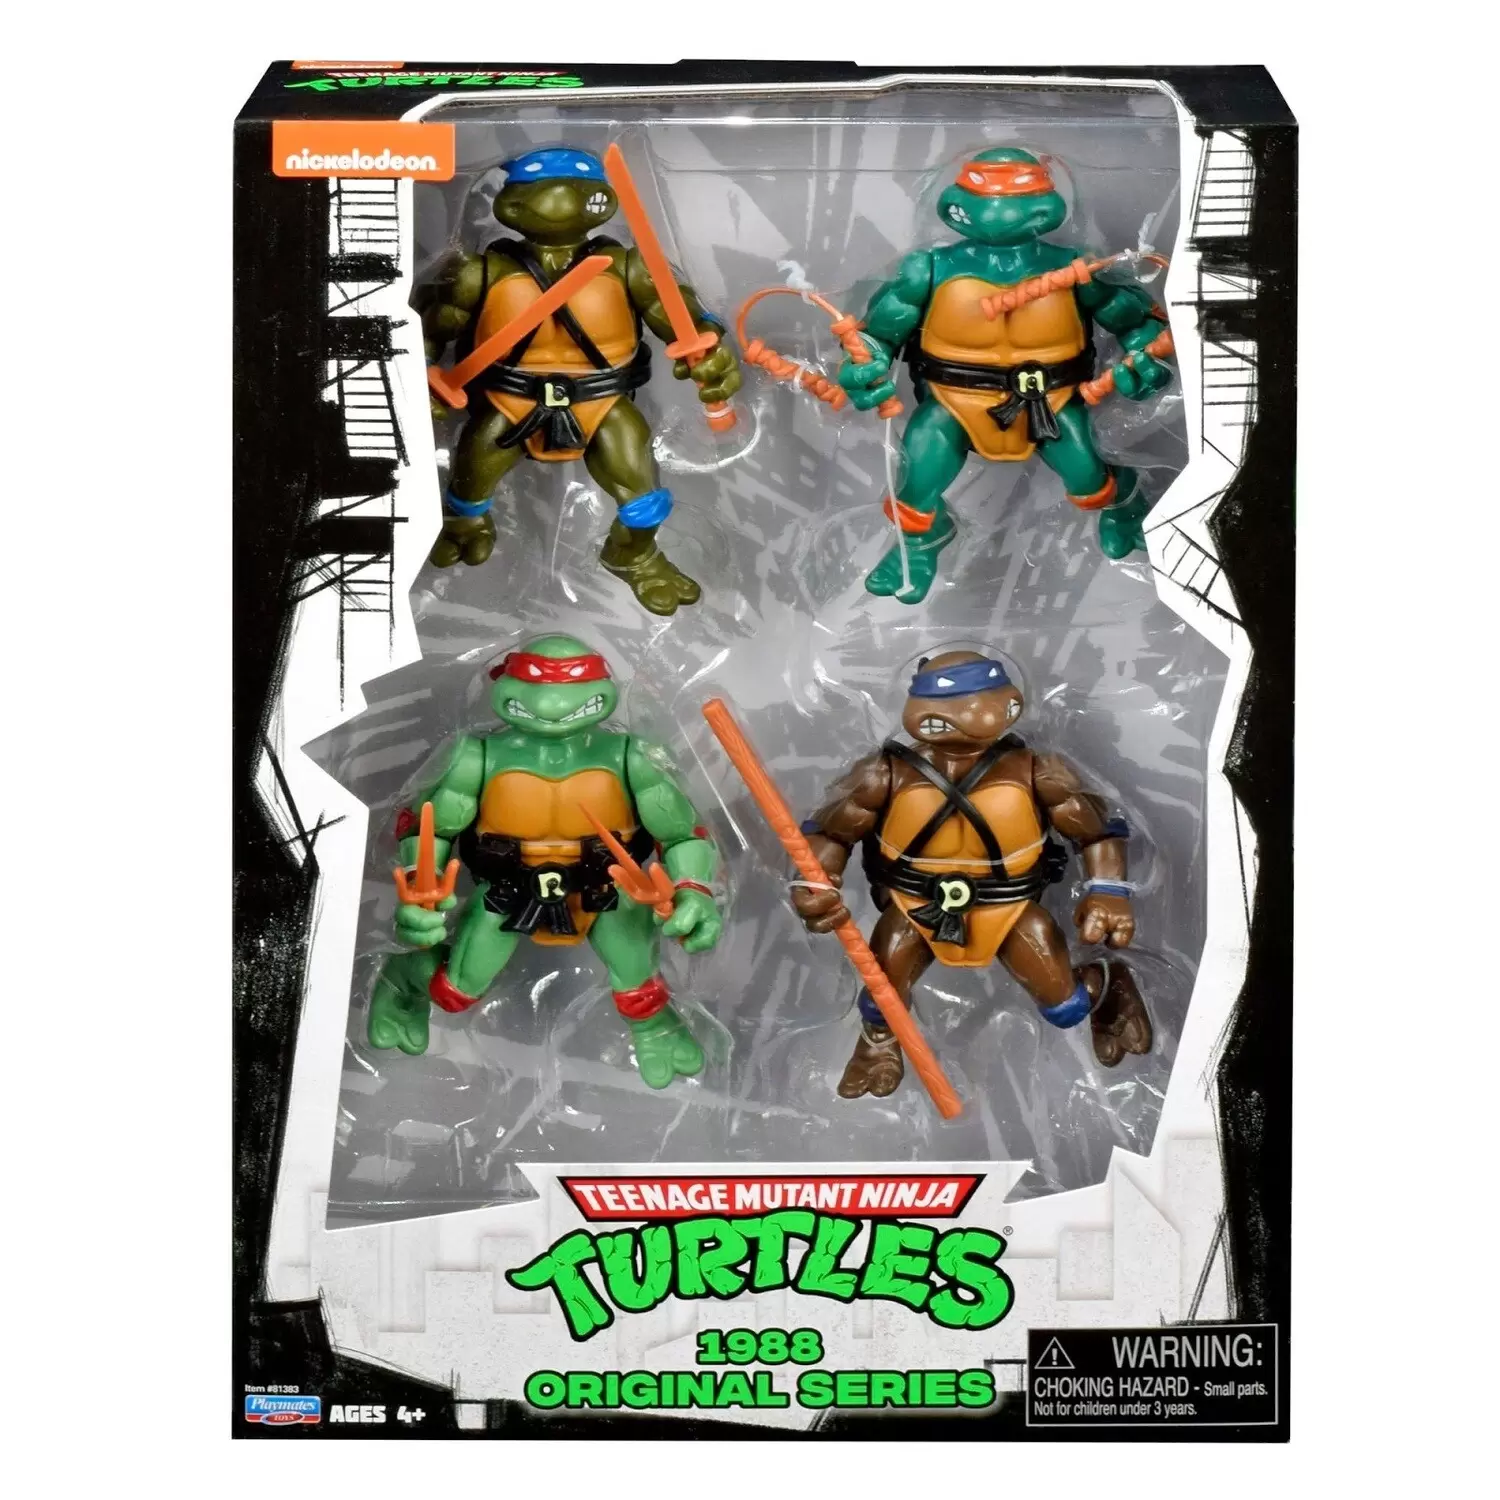 4 Teenage Mutant Ninja Turtles Teenage Mutant Ninja Turtles original arme Racks Near Comme neuf condition 1988 